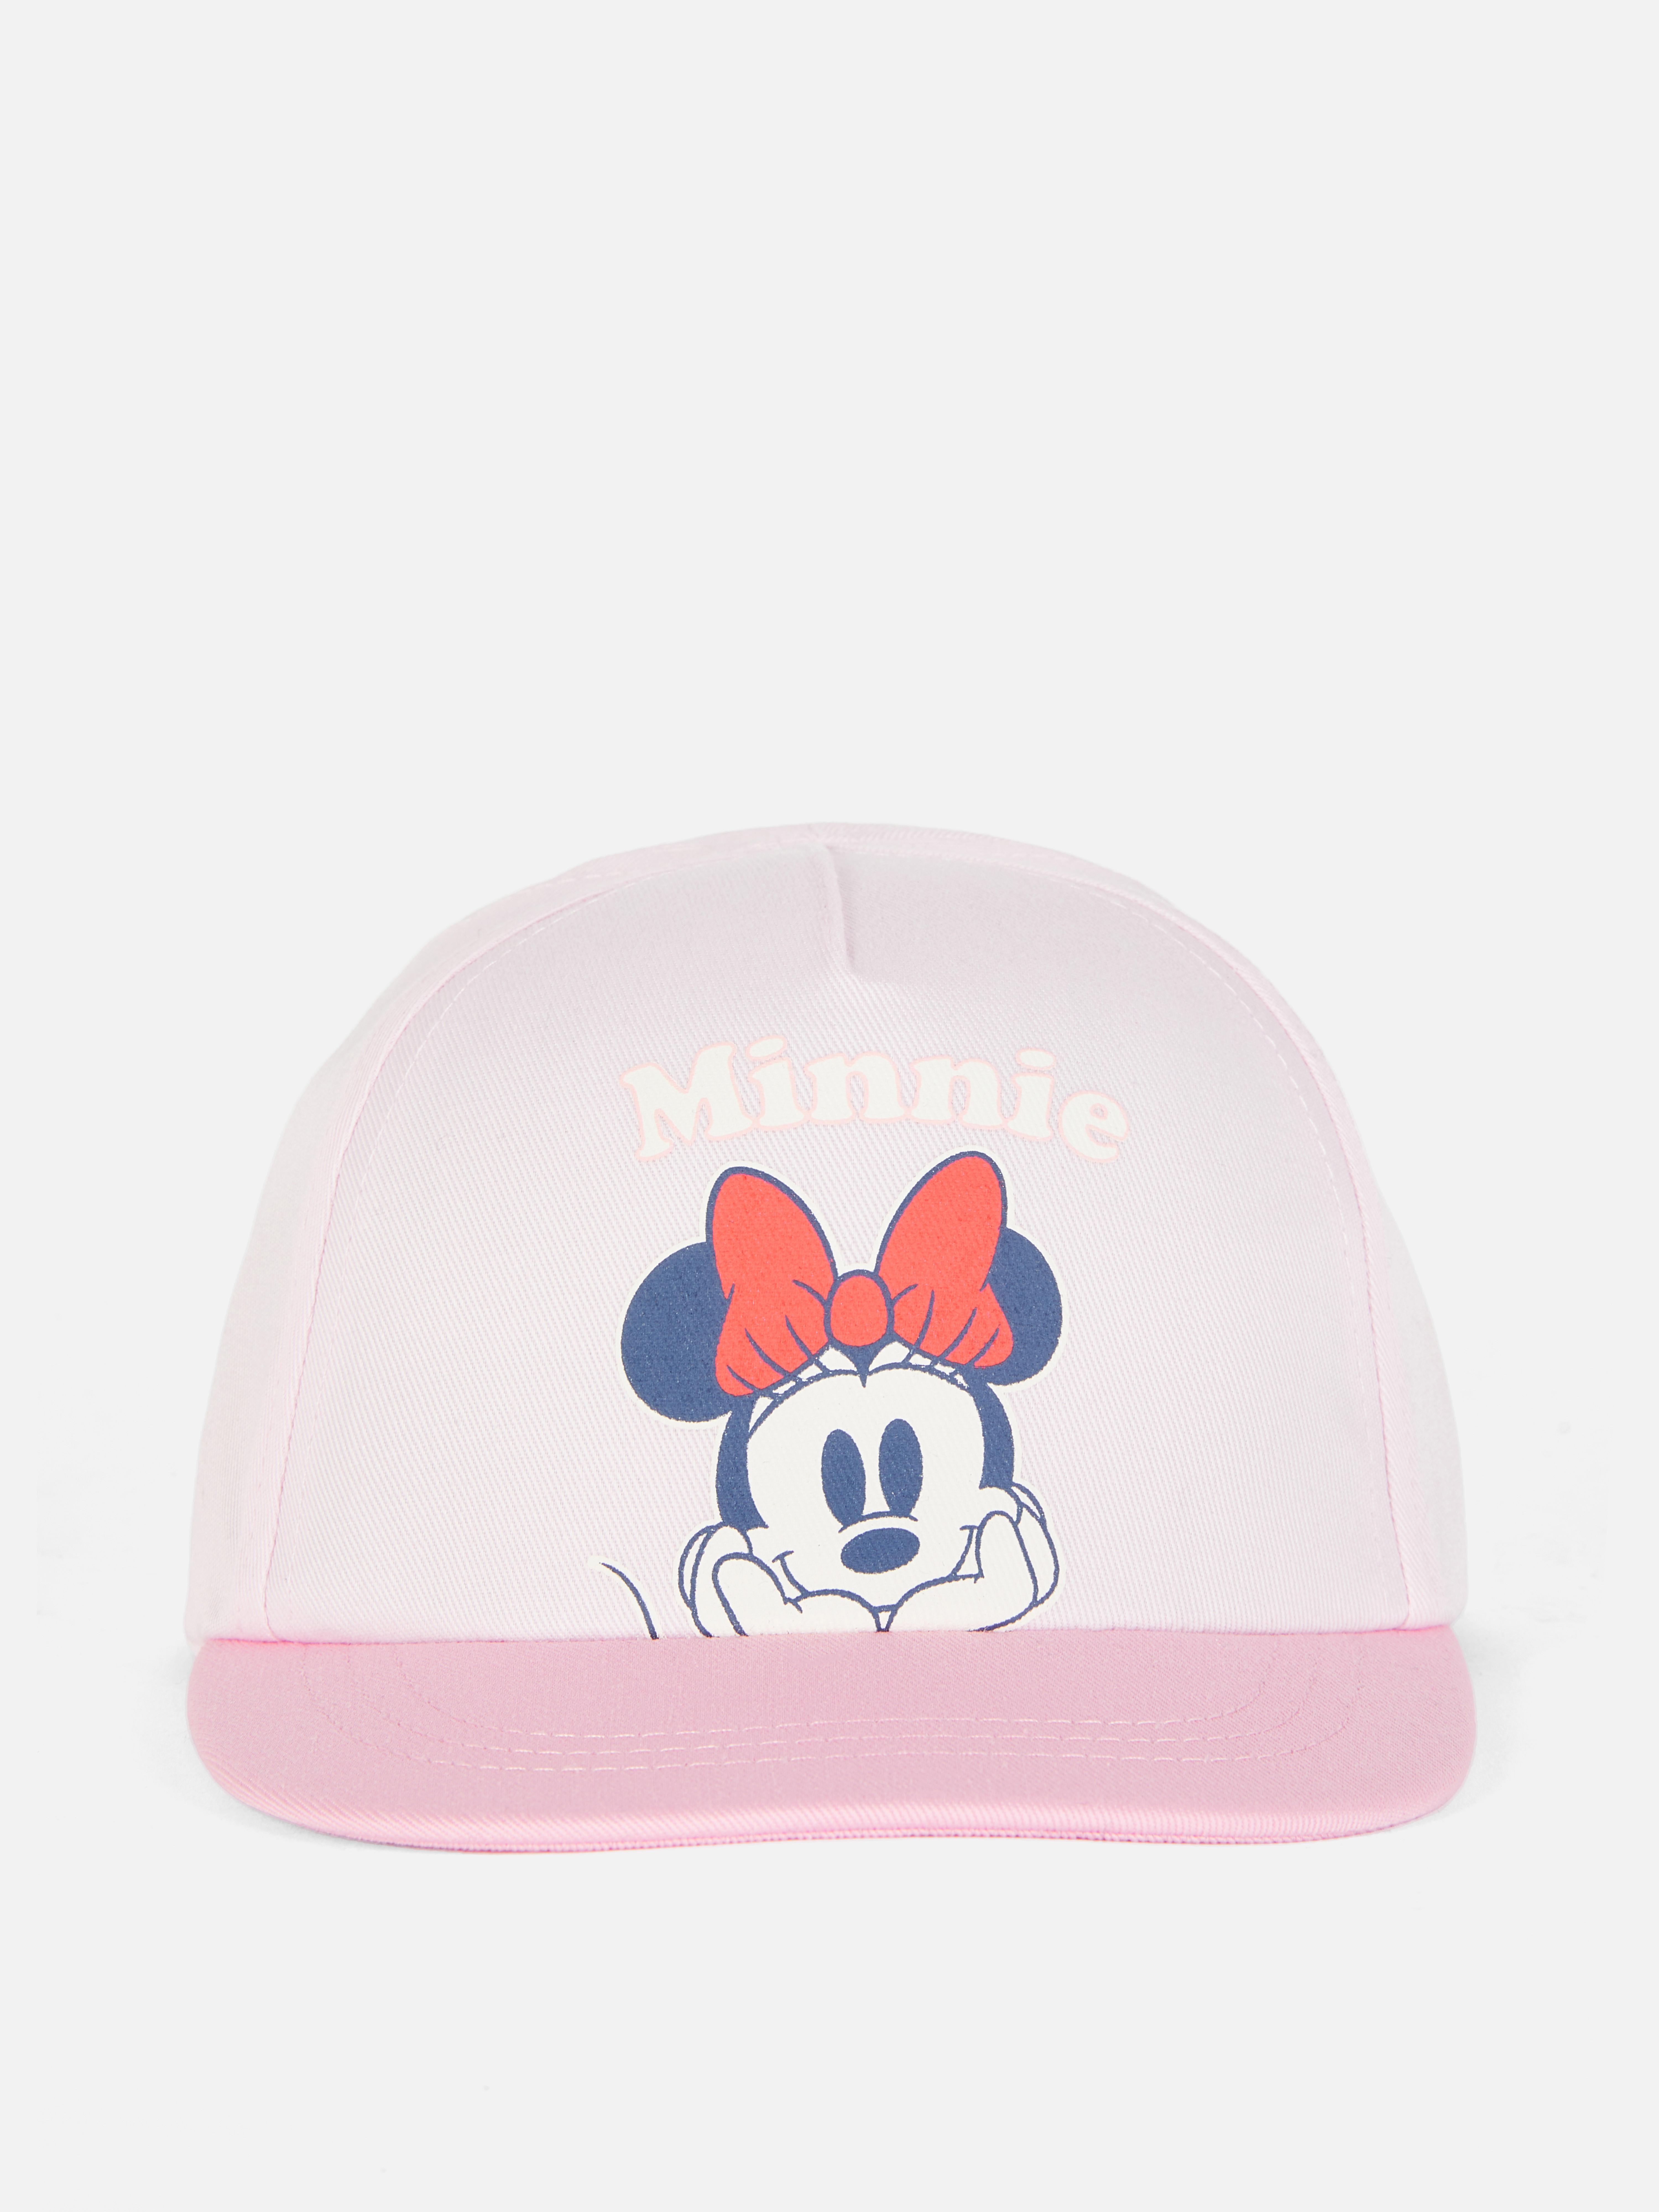 Honkbalpet Disney's Minnie Mouse